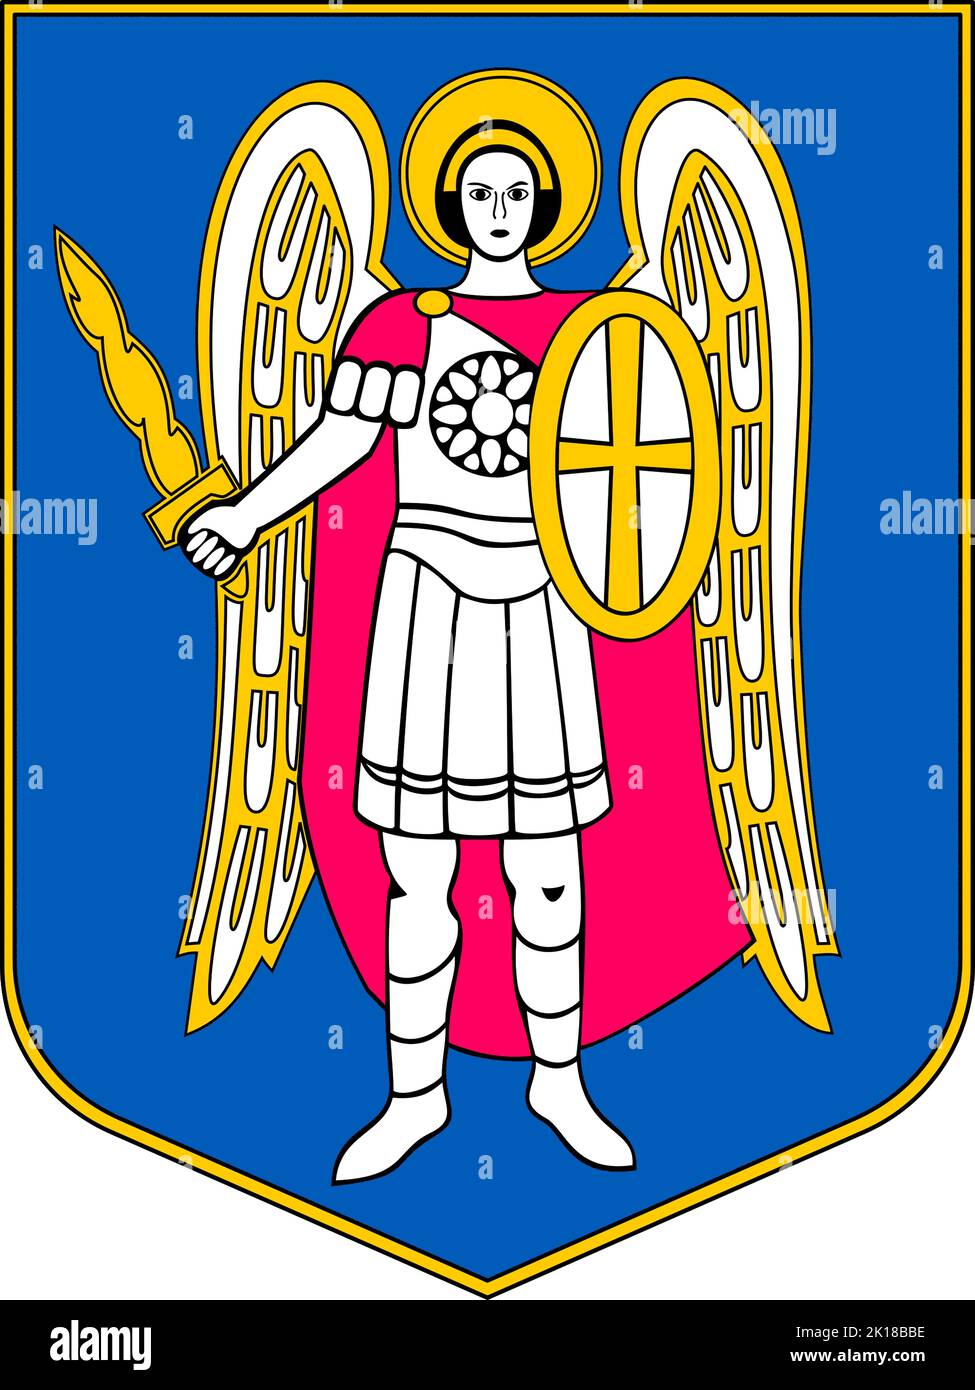 Wappen der ukrainischen Hauptstadt Kiew - Ukraine. Stockfoto